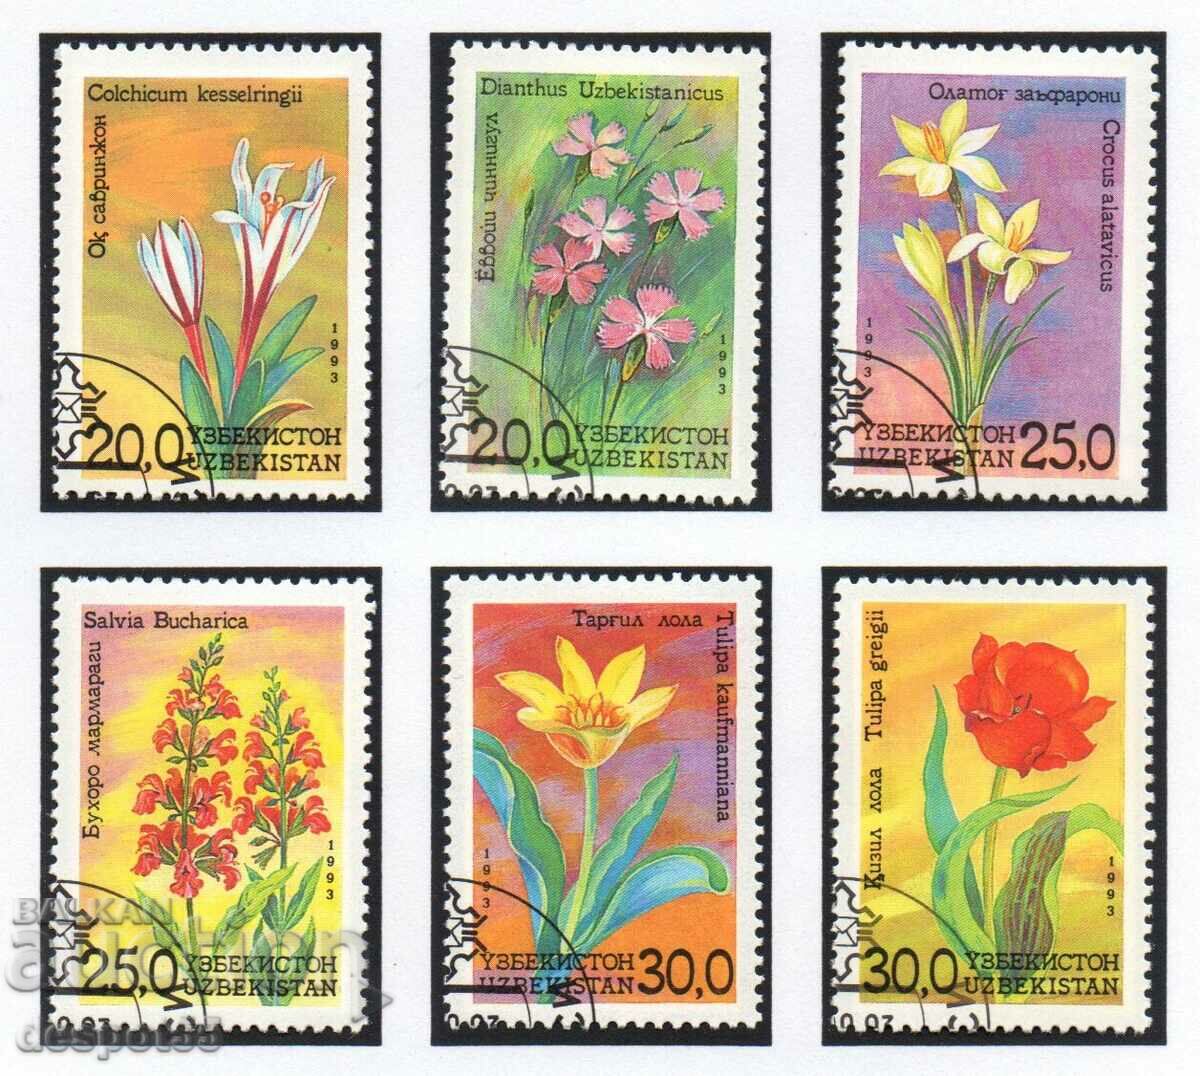 1993. Ουζμπεκιστάν. Τα λουλούδια του Ουζμπεκιστάν + Μπλοκ.